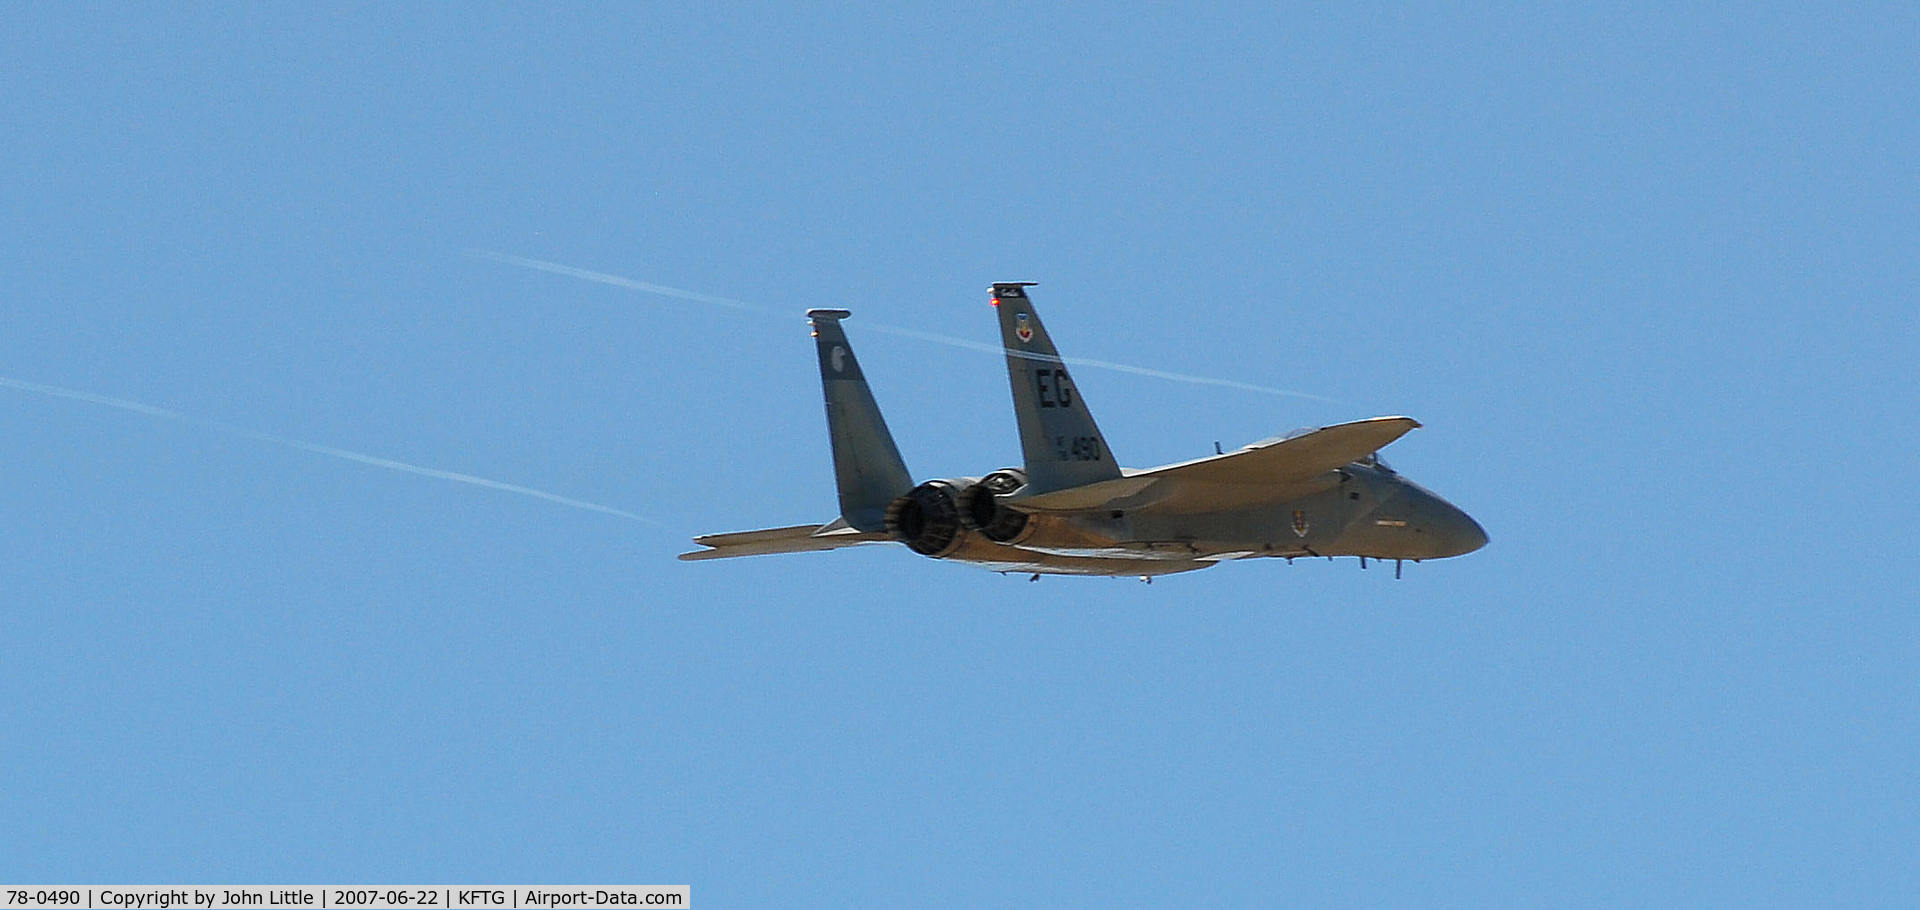 78-0490, 1978 McDonnell Douglas F-15C Eagle C/N 0472/C023, About 20 more knots would do it.....F-15